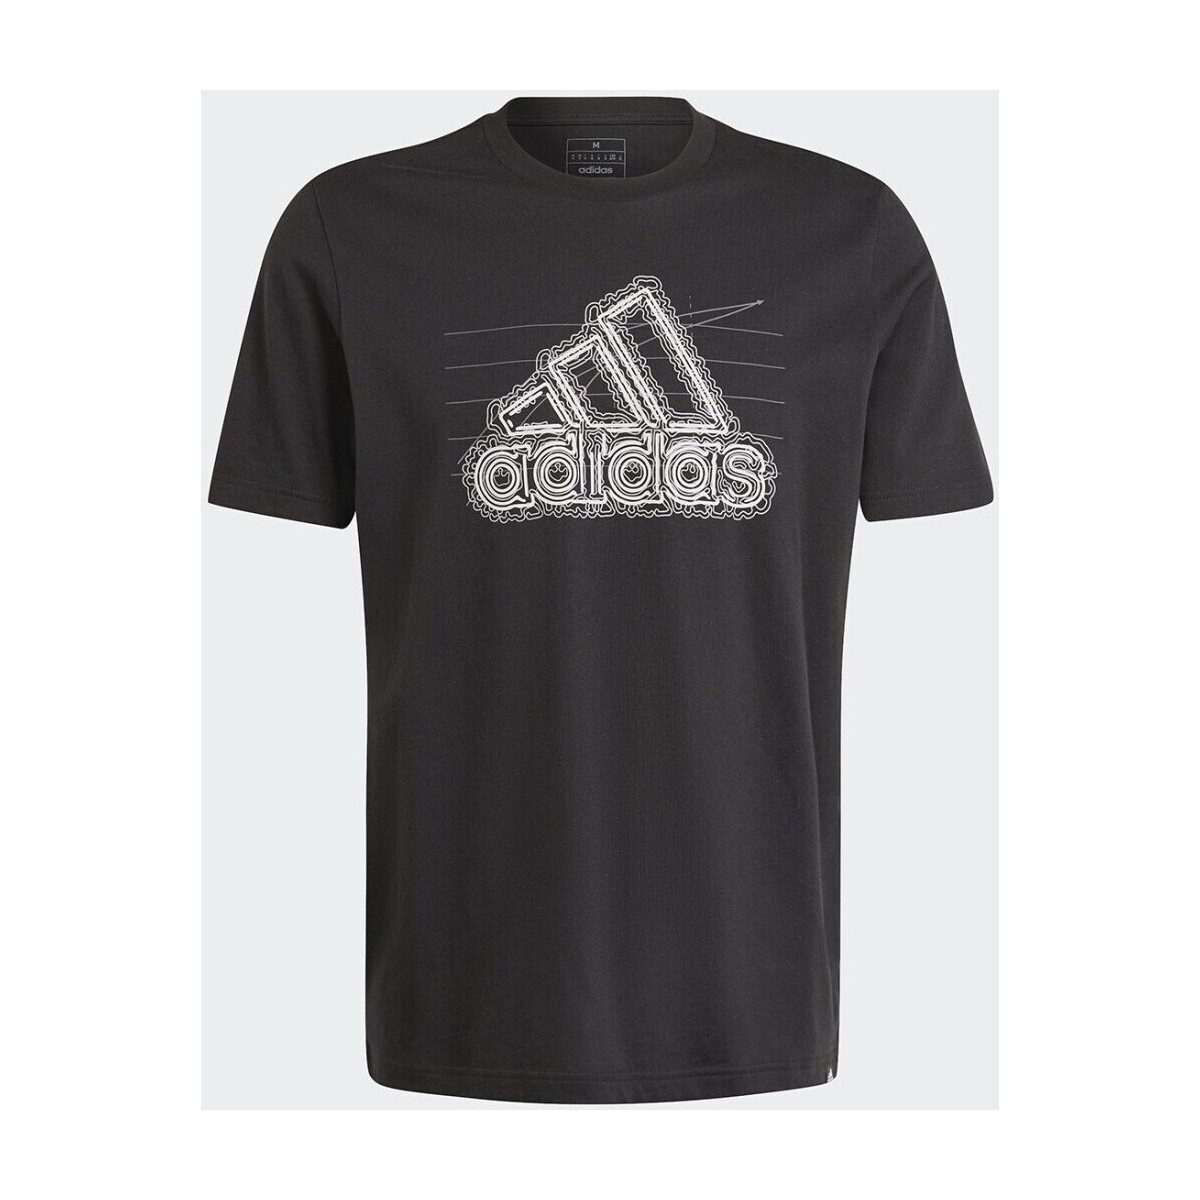 Kleidung Herren T-Shirts & Poloshirts adidas Originals  Schwarz